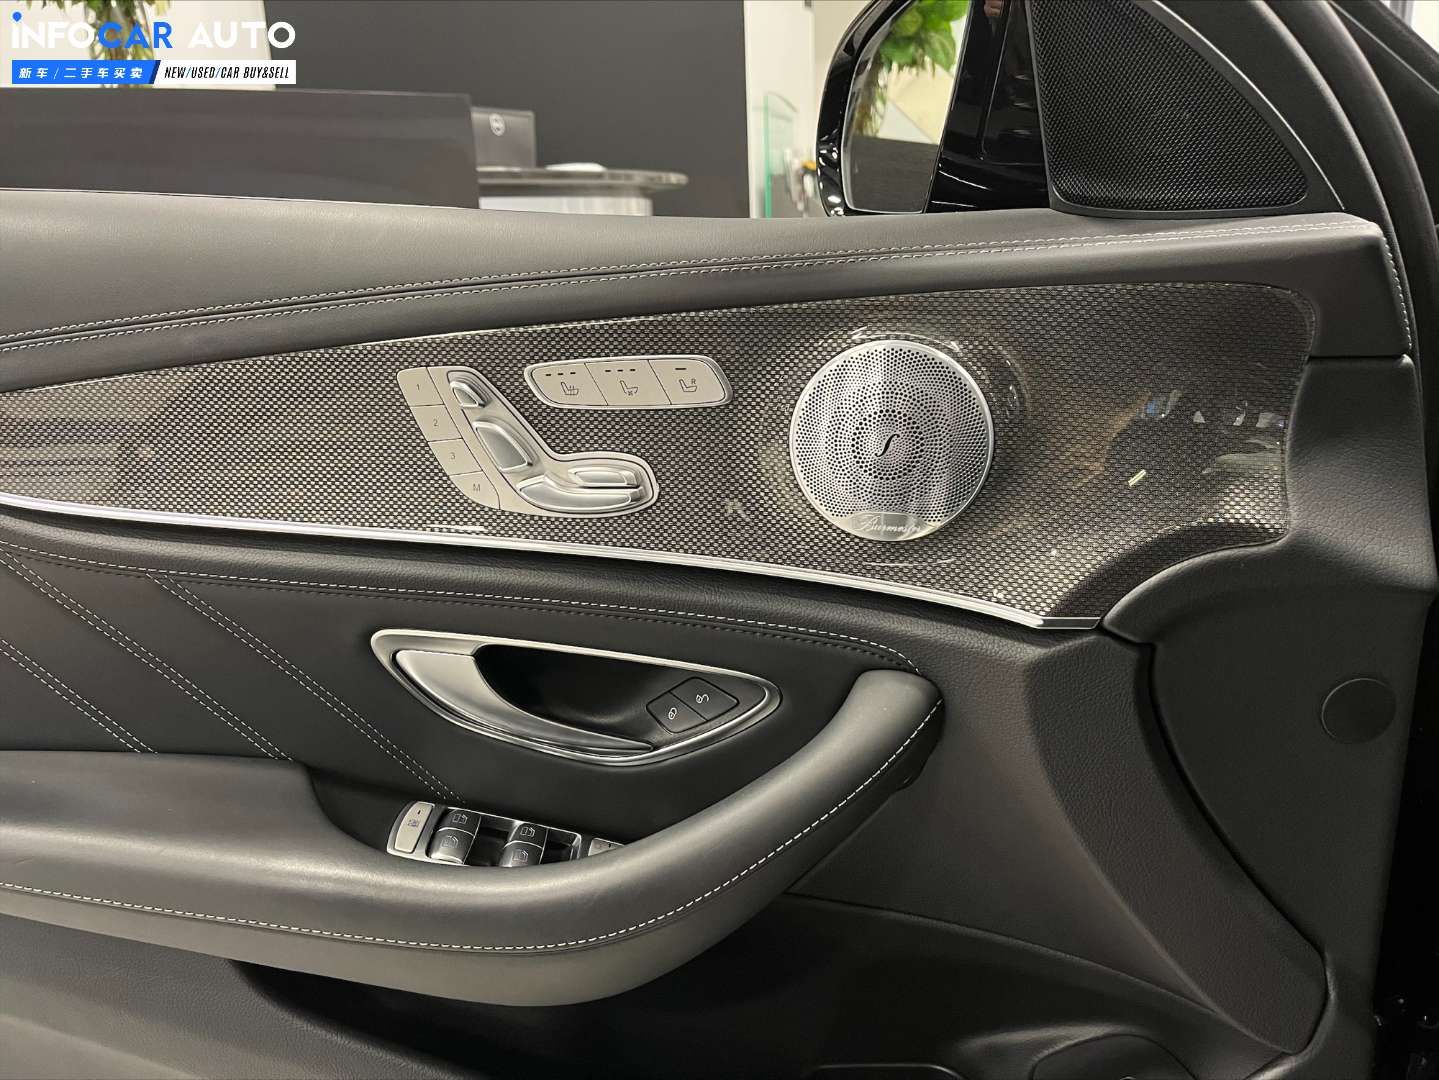 2020 Mercedes-Benz E-Class E63 - INFOCAR - Toronto Auto Trading Platform